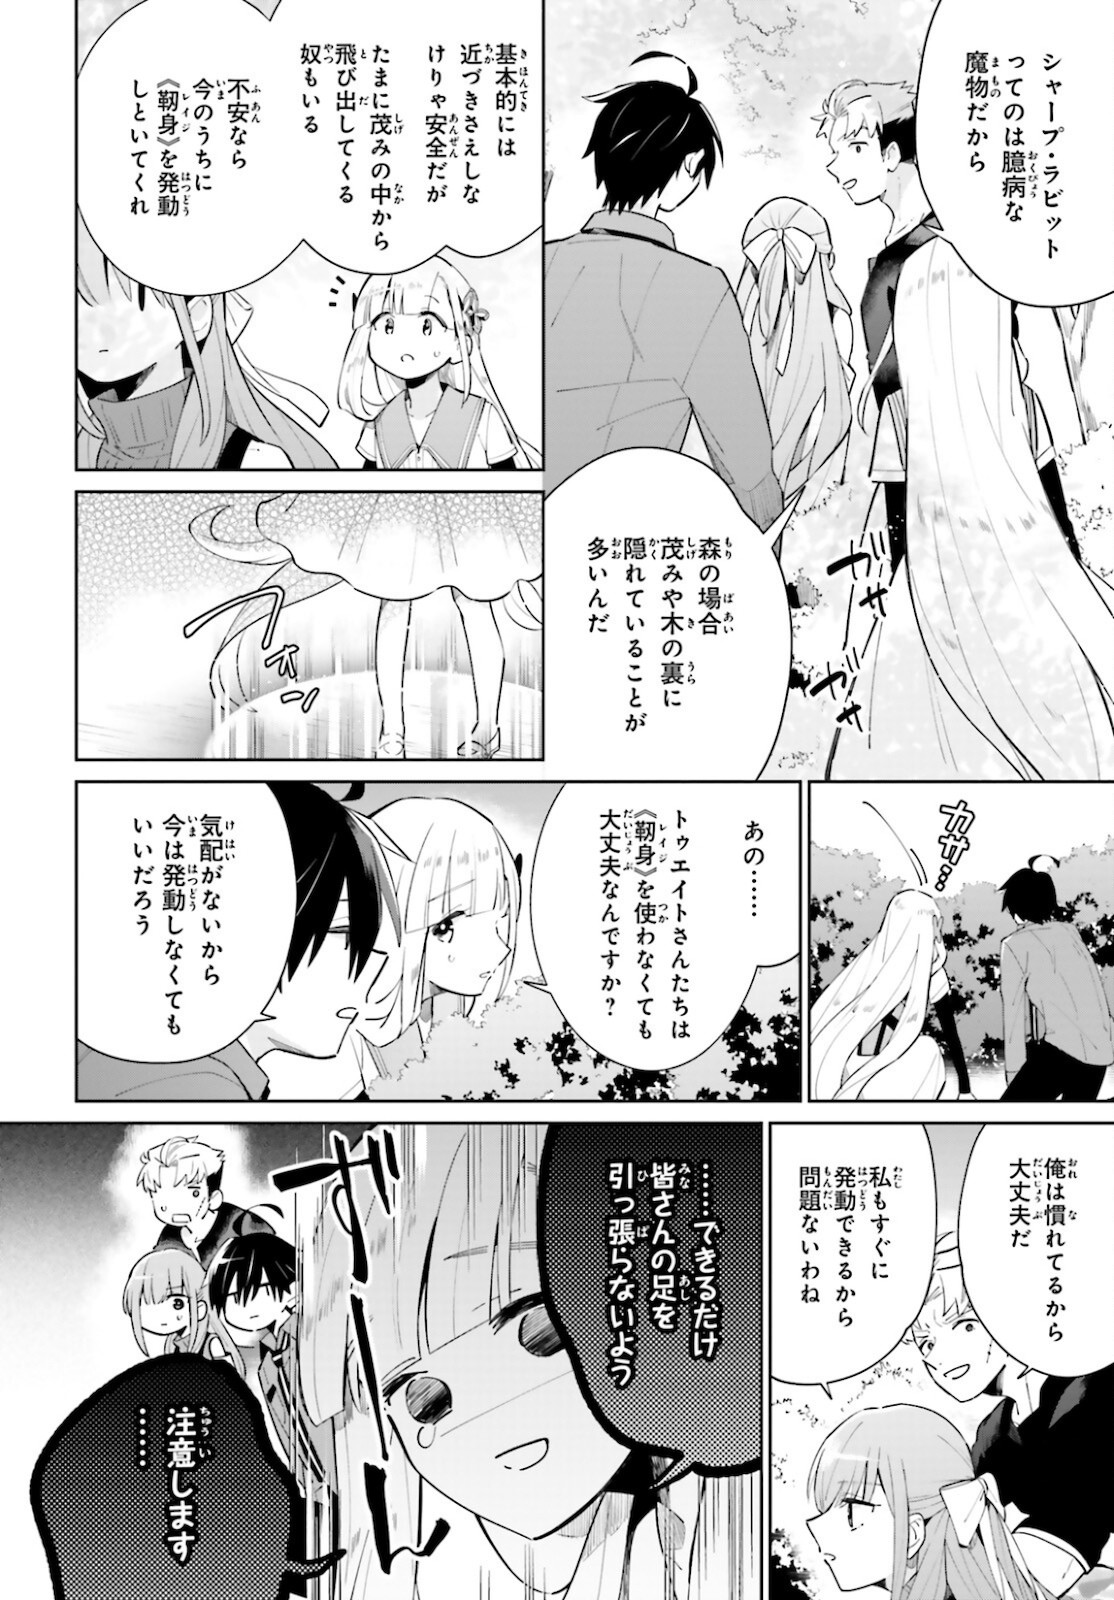 Kage-no-Eiyuu-no-Nichijou-tan-Ichi-no-Yuusha-no-Ura-de-An'yaku-Shite-ita-Saikyou-no-Eijento-Soshiki-ga-Kaitai-sareta-no-de-Shoutai-Kakushite-Hito-nami-no-Nichijou-o-Ouka-suru - Chapter 13 - Page 4